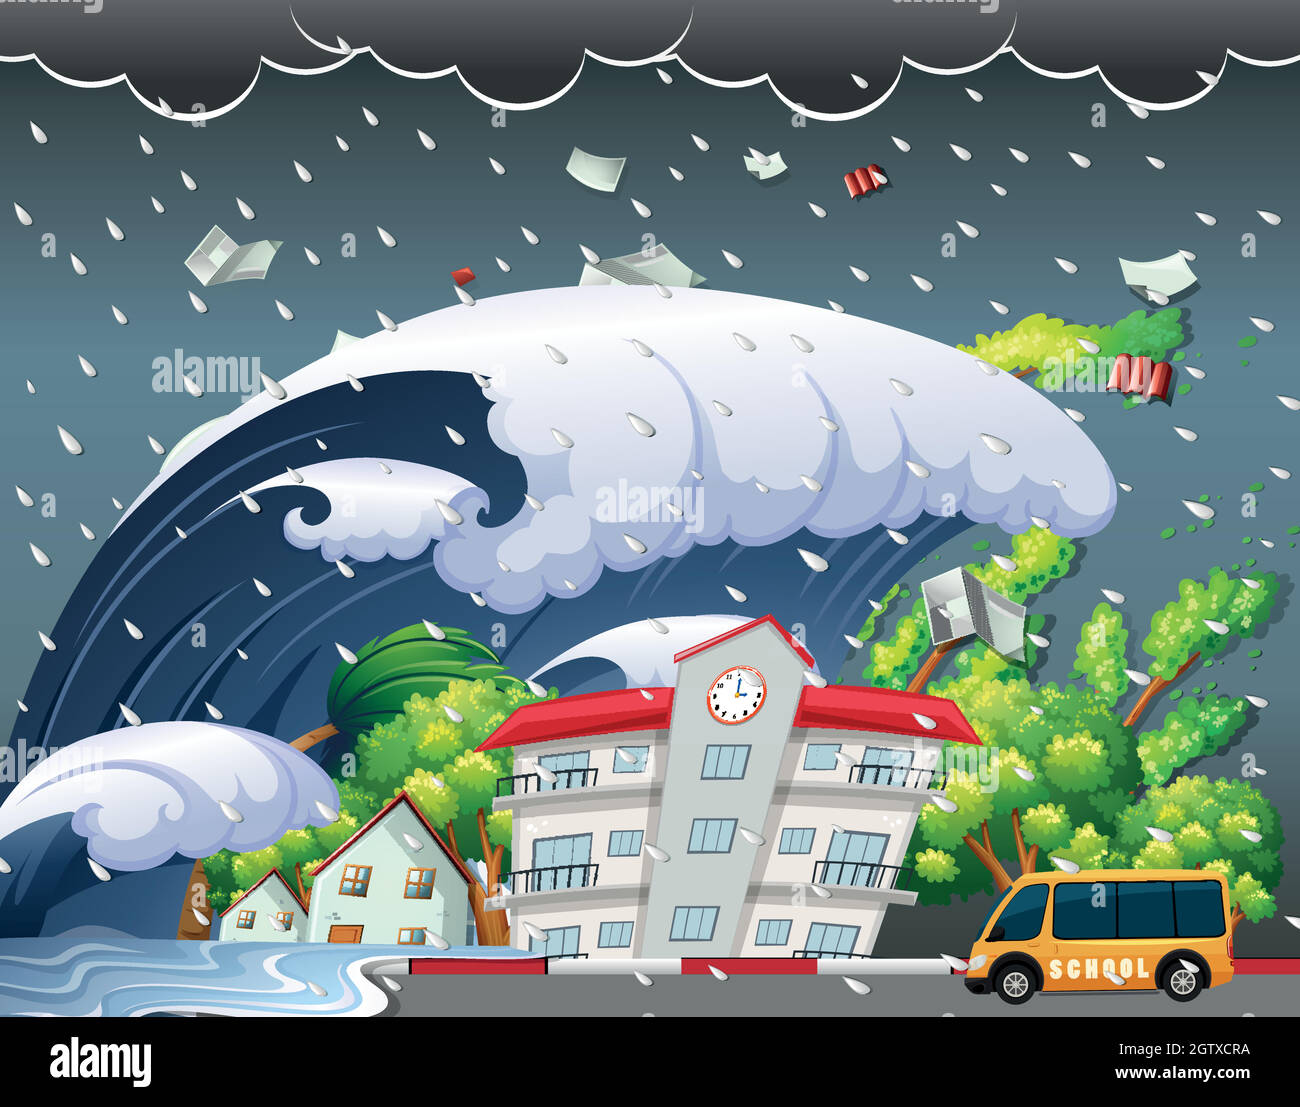 Le tsunami a frappé le bâtiment de l'école Illustration de Vecteur